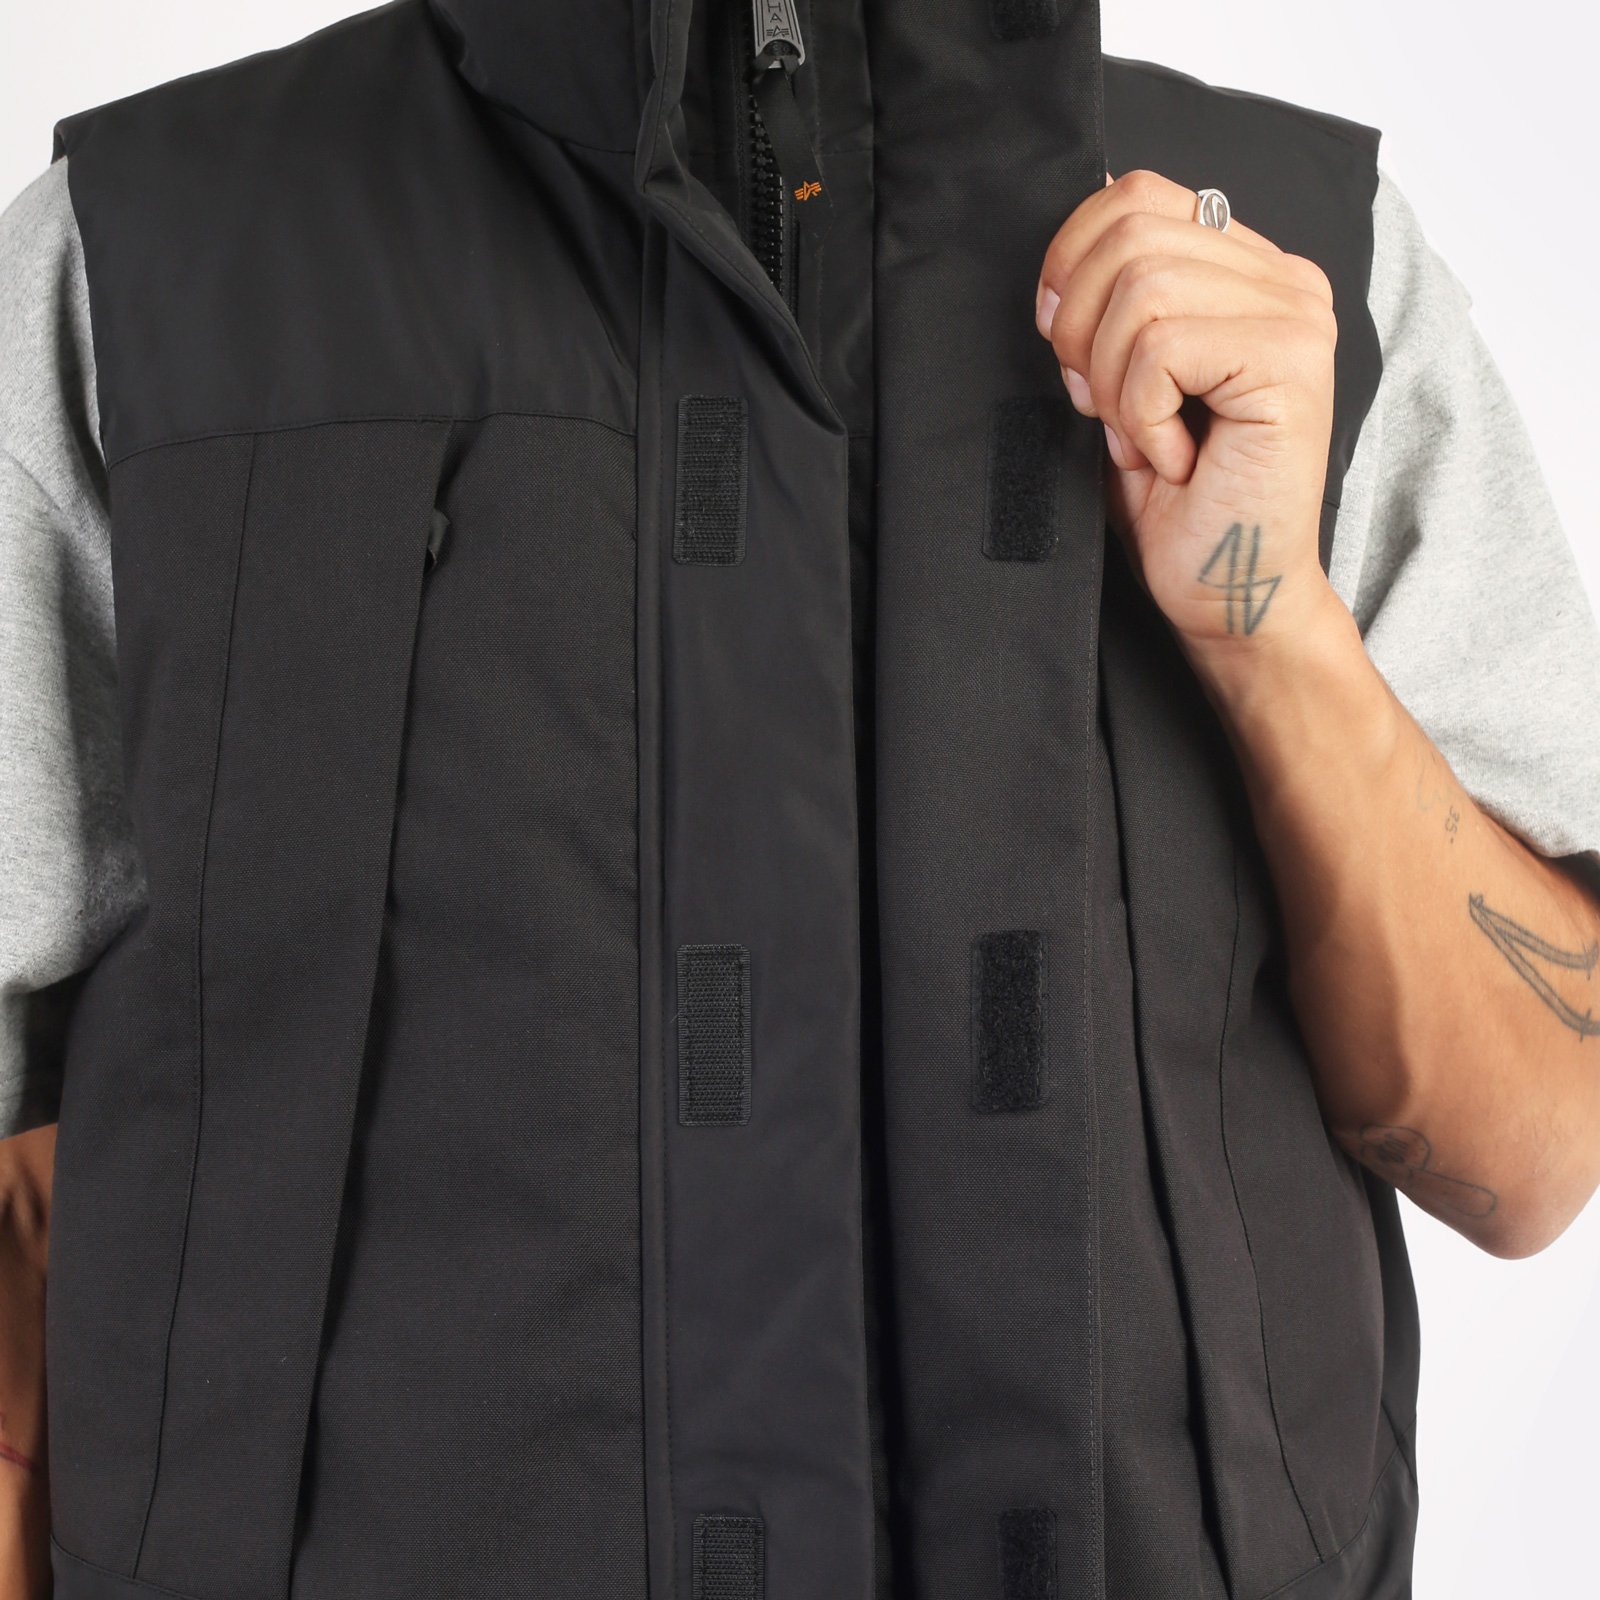 мужской жилет Alpha Industries PCU Mod Vest  (MJU53500C1-black)  - цена, описание, фото 4